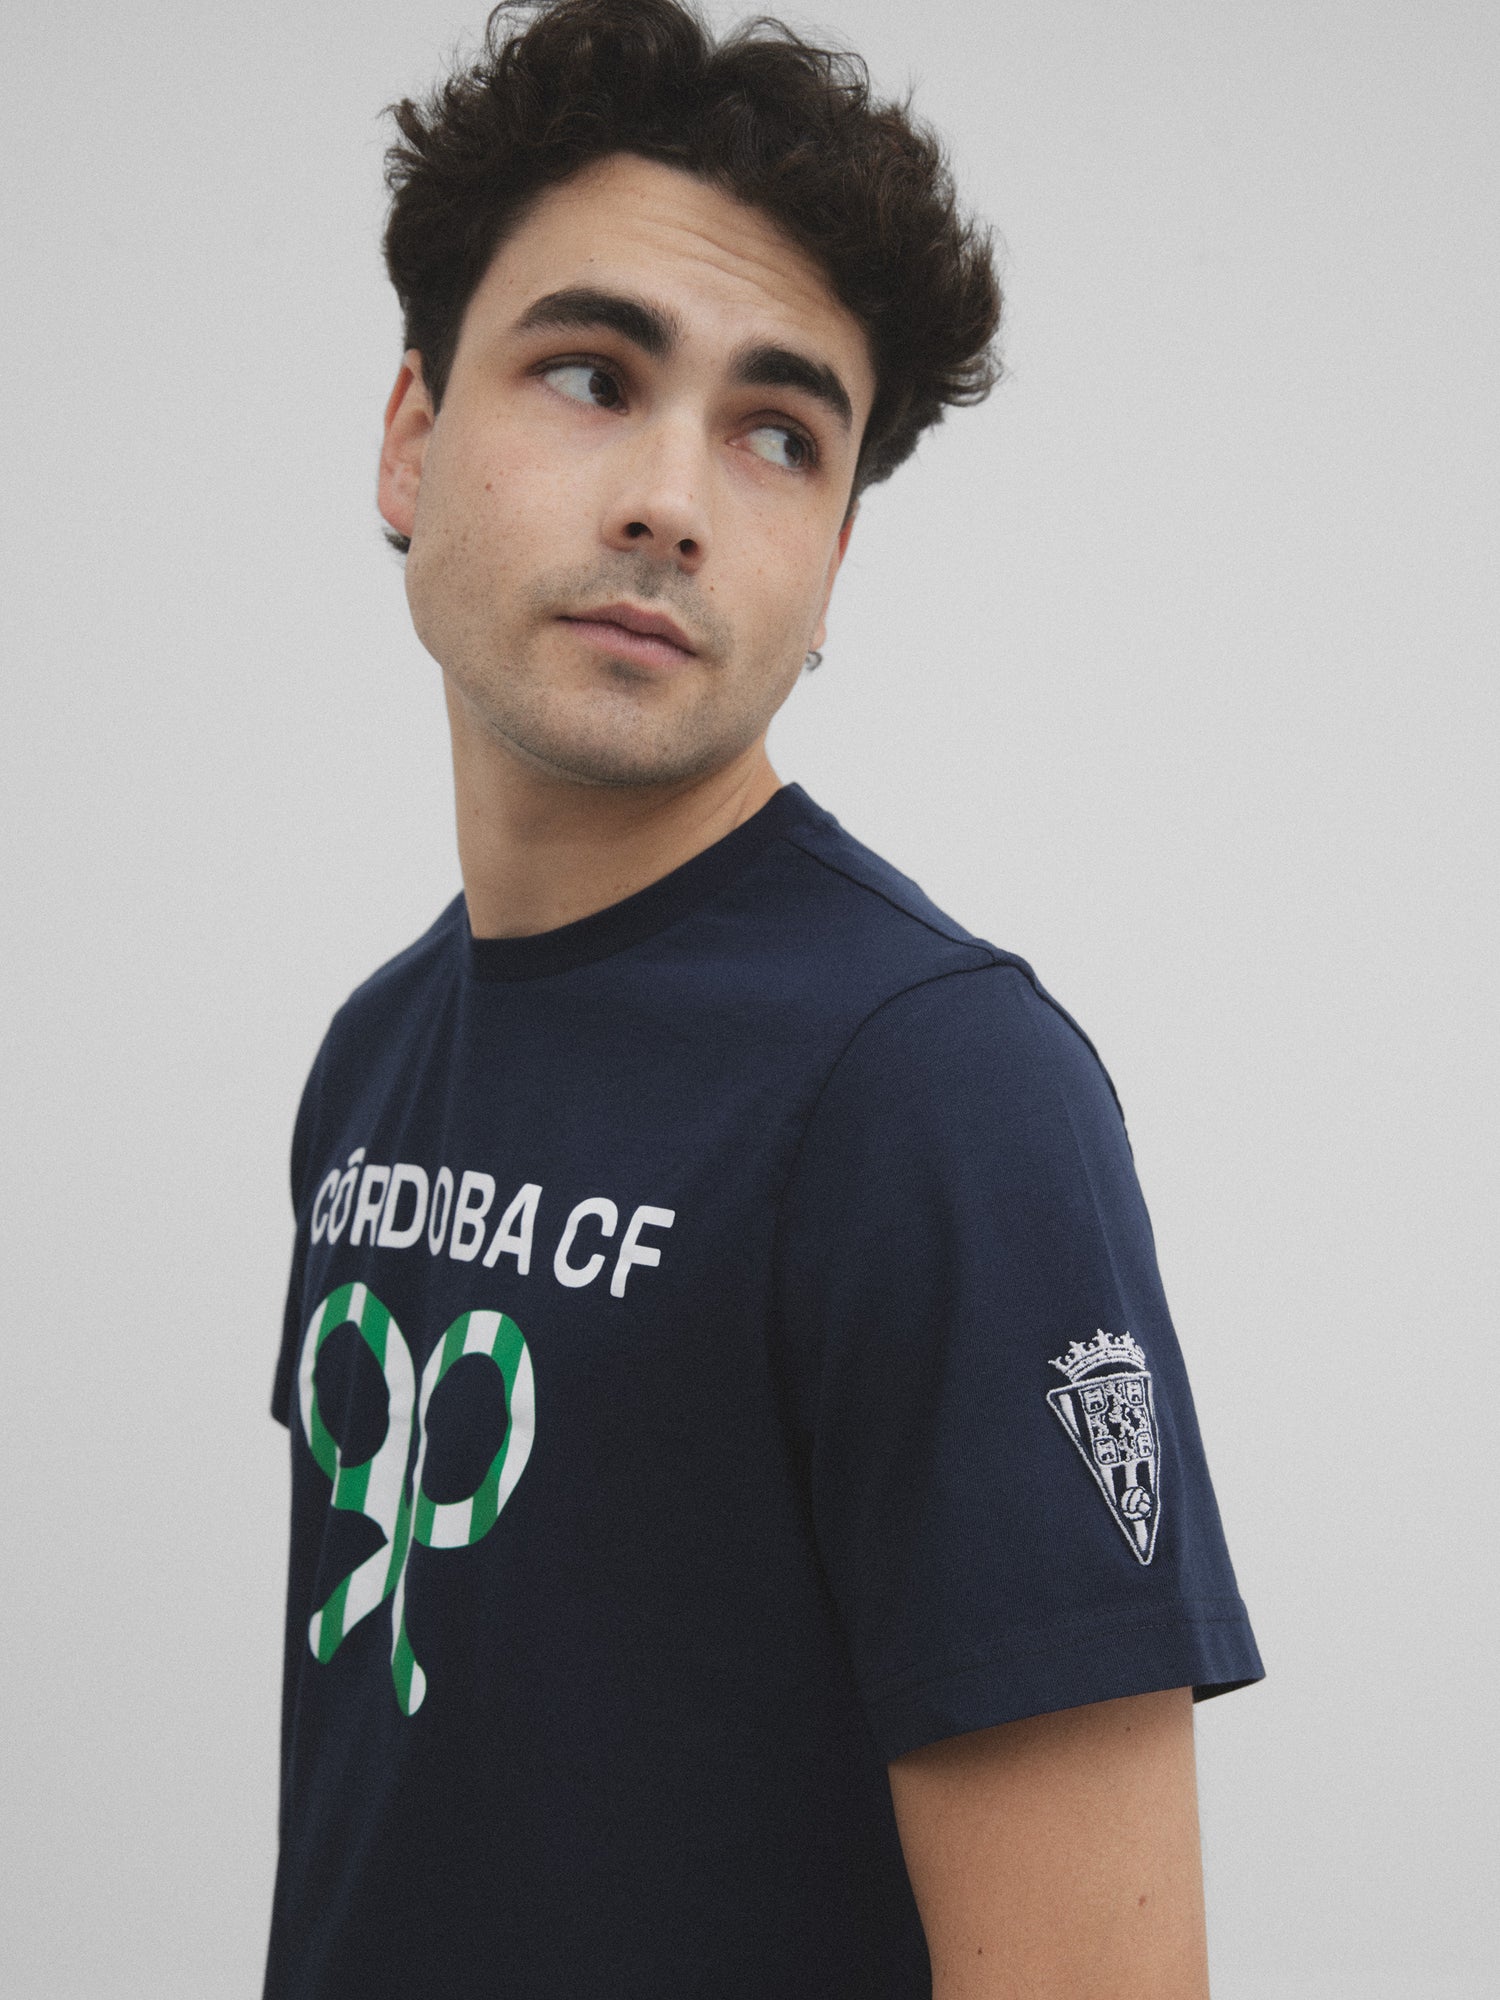 Cordoba CF navy blue t-shirt